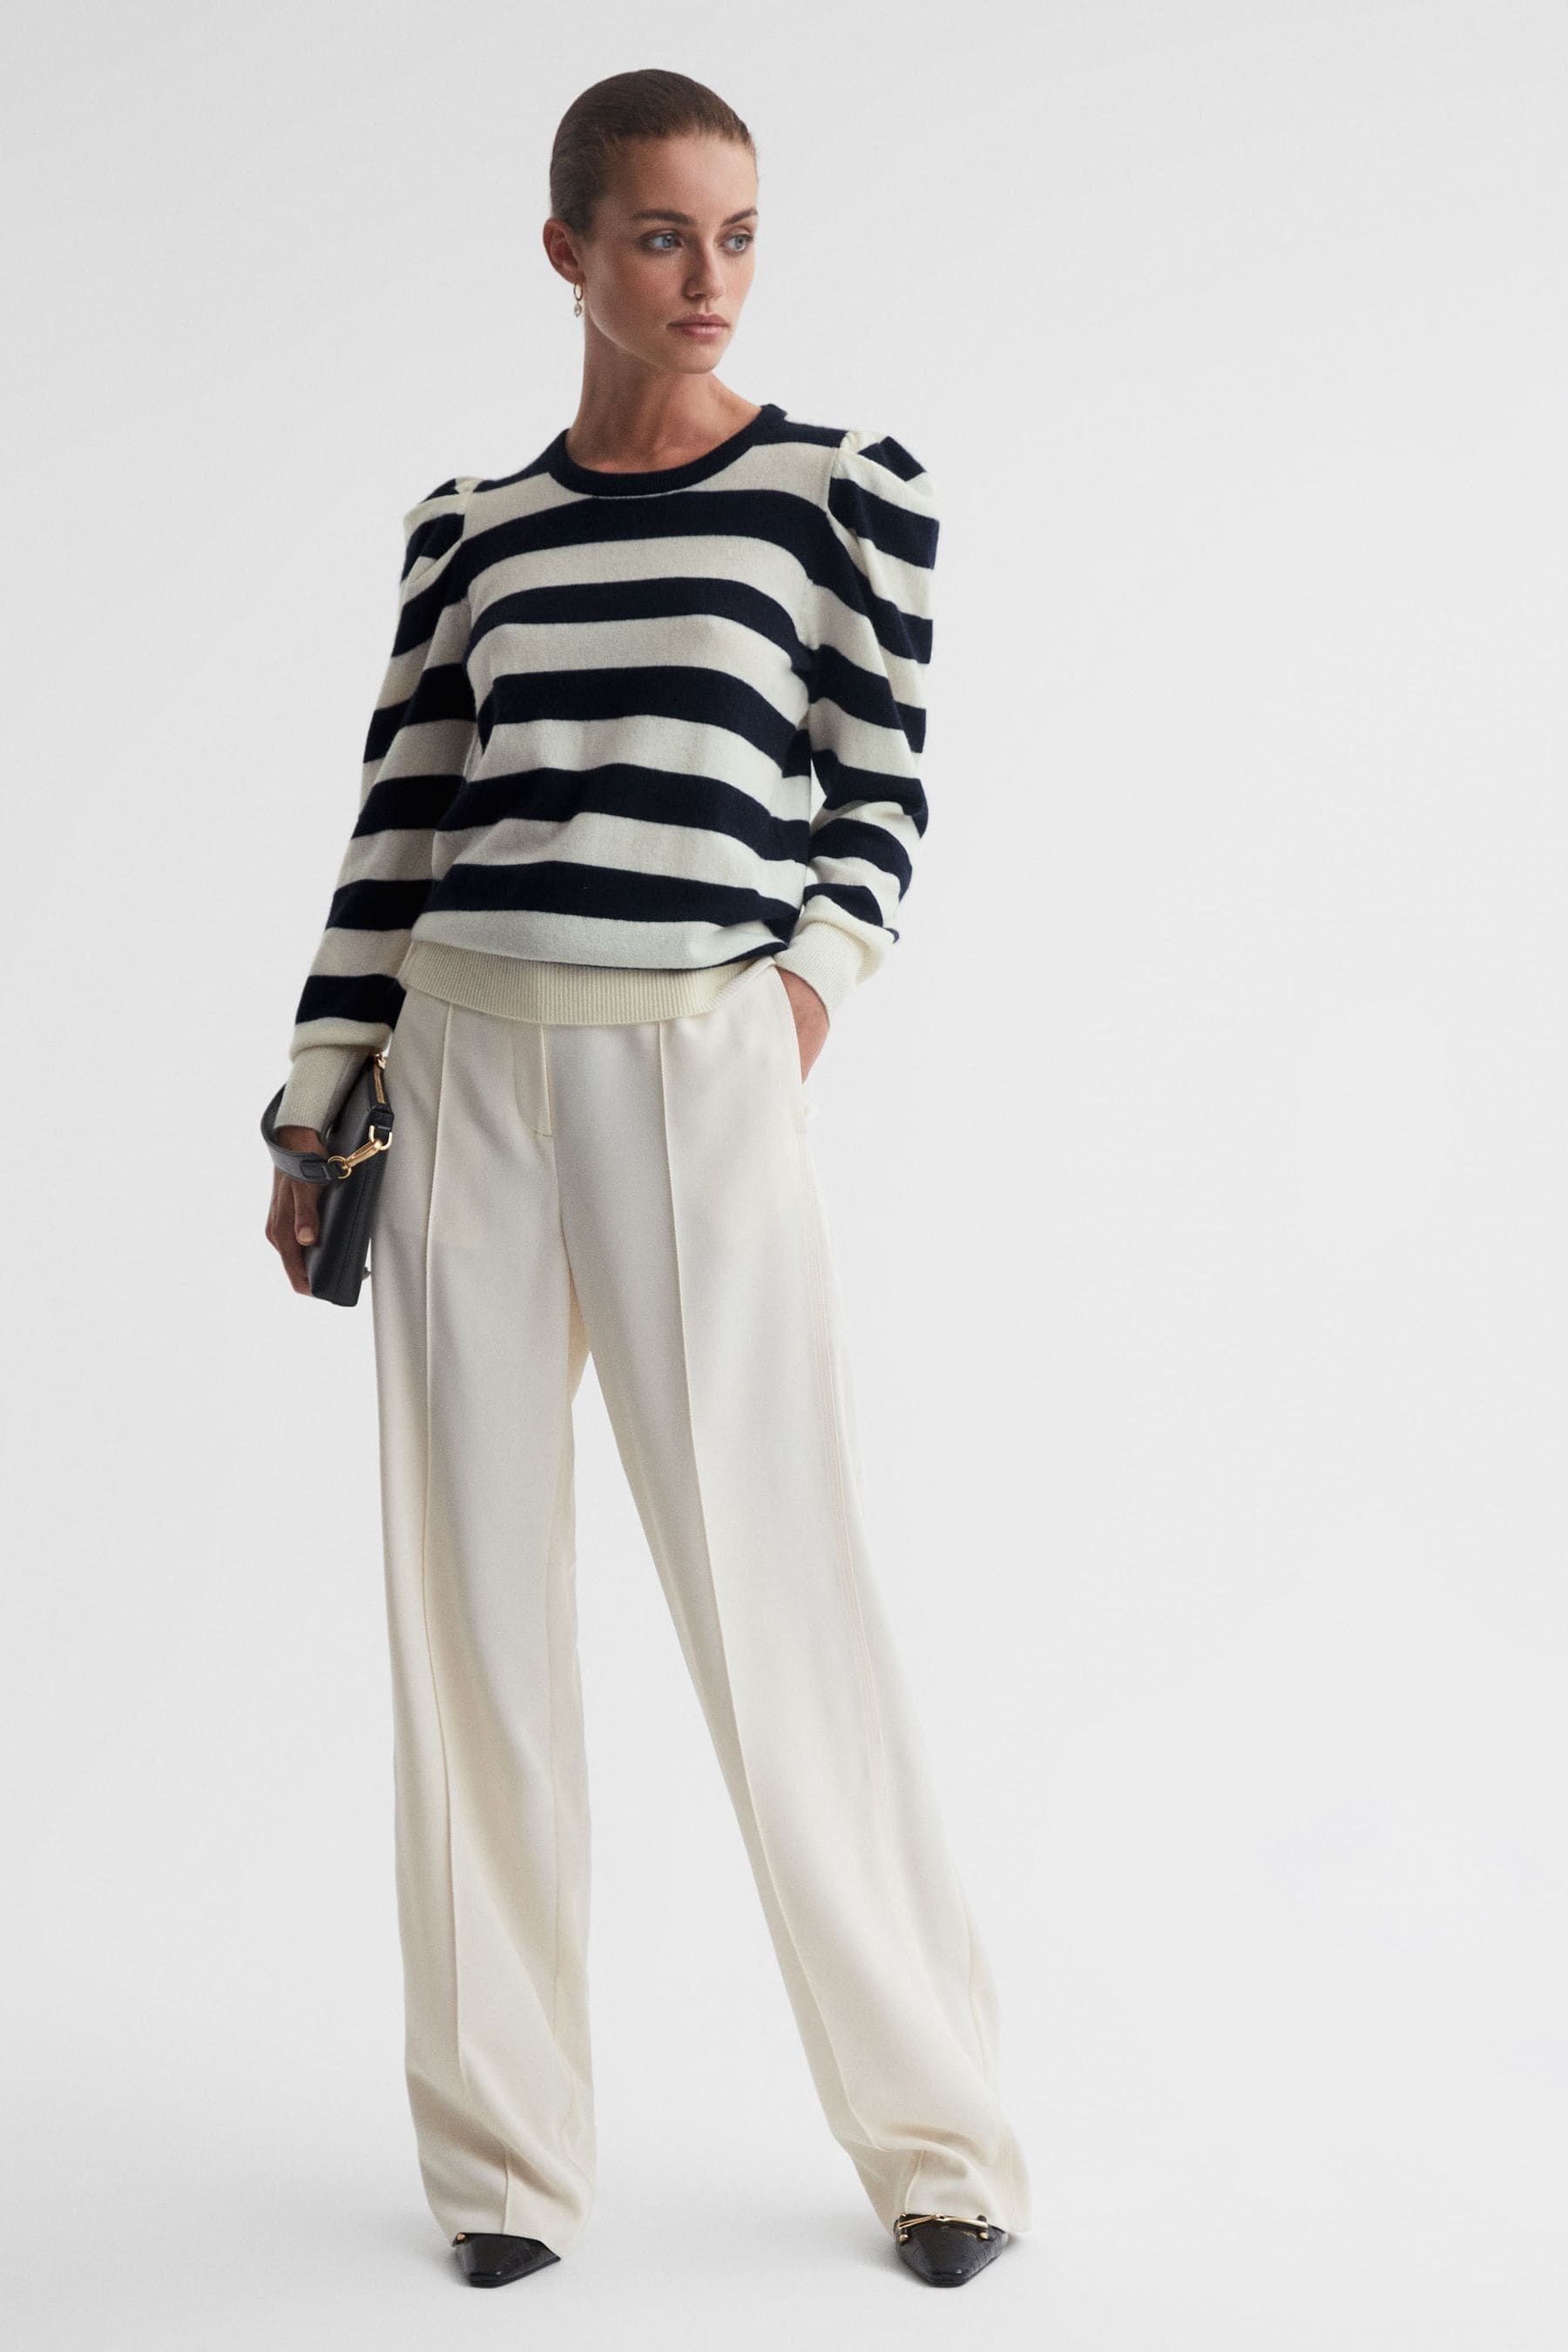 Reiss Fleming - Madeleine Thompson Navy/cream Madeleine Thompson Wool-cashmere Striped Top, M